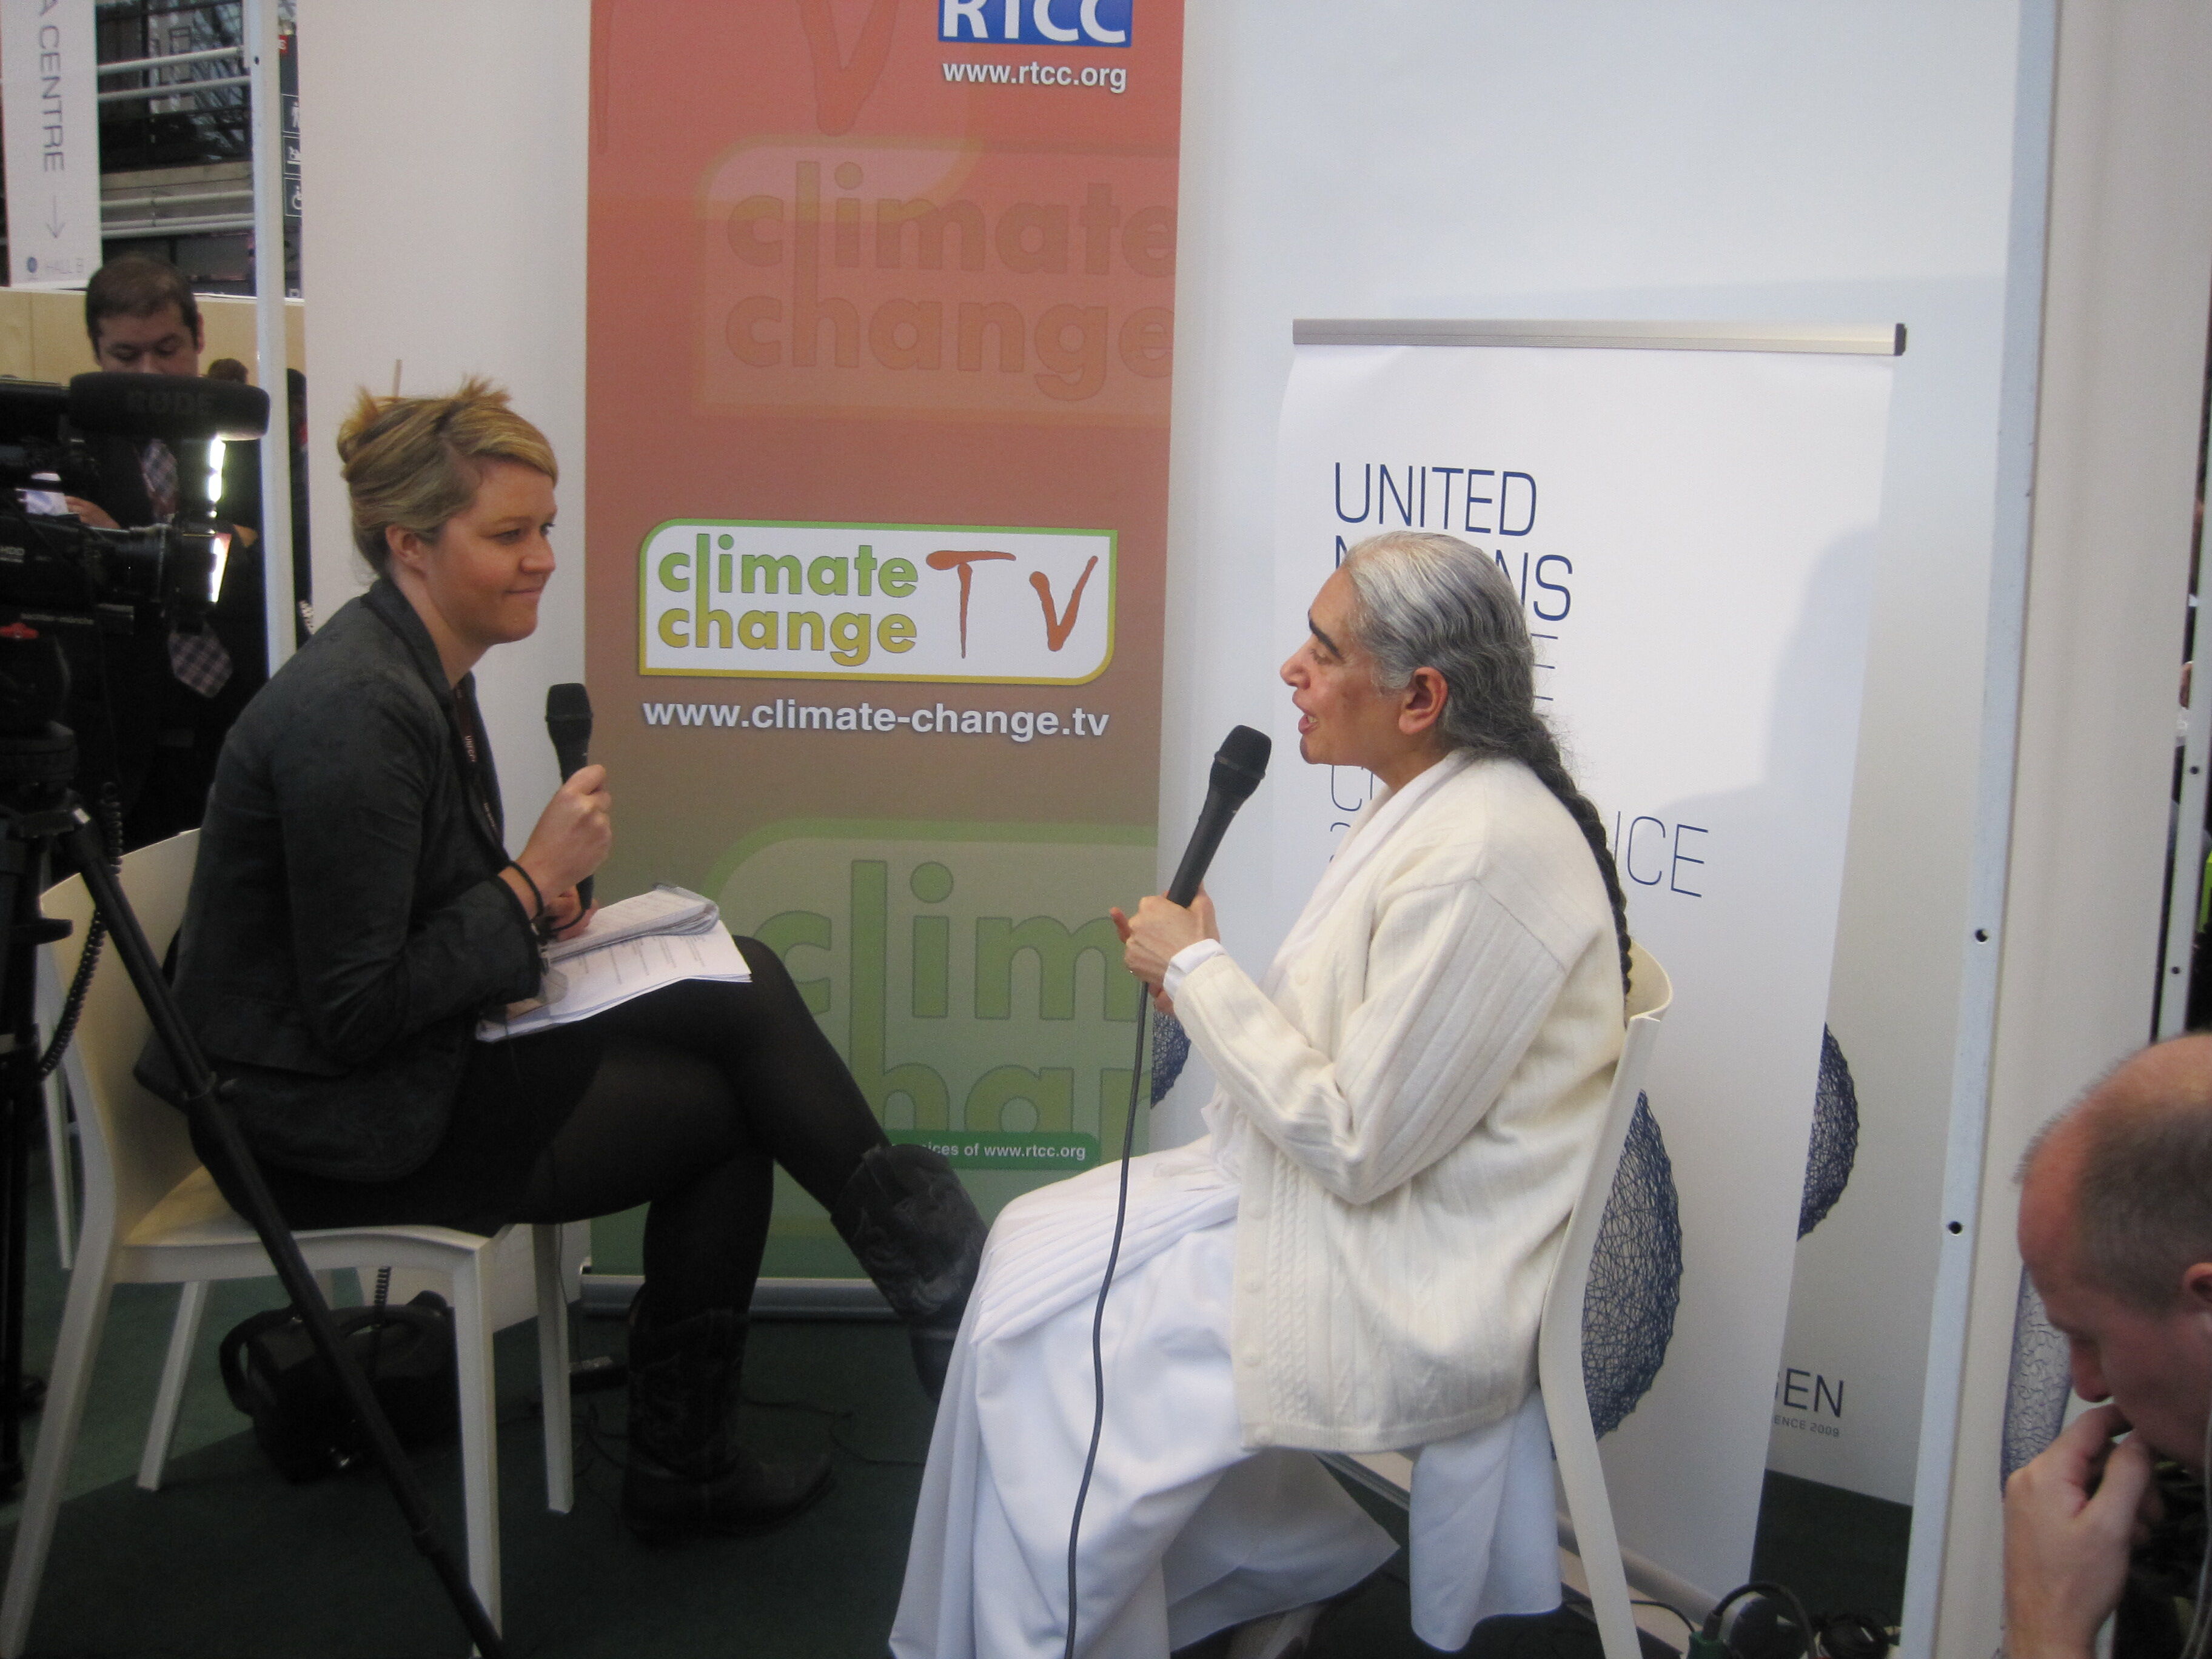 Interview: Climate Change TV at COP15, Copenhagen, 2009